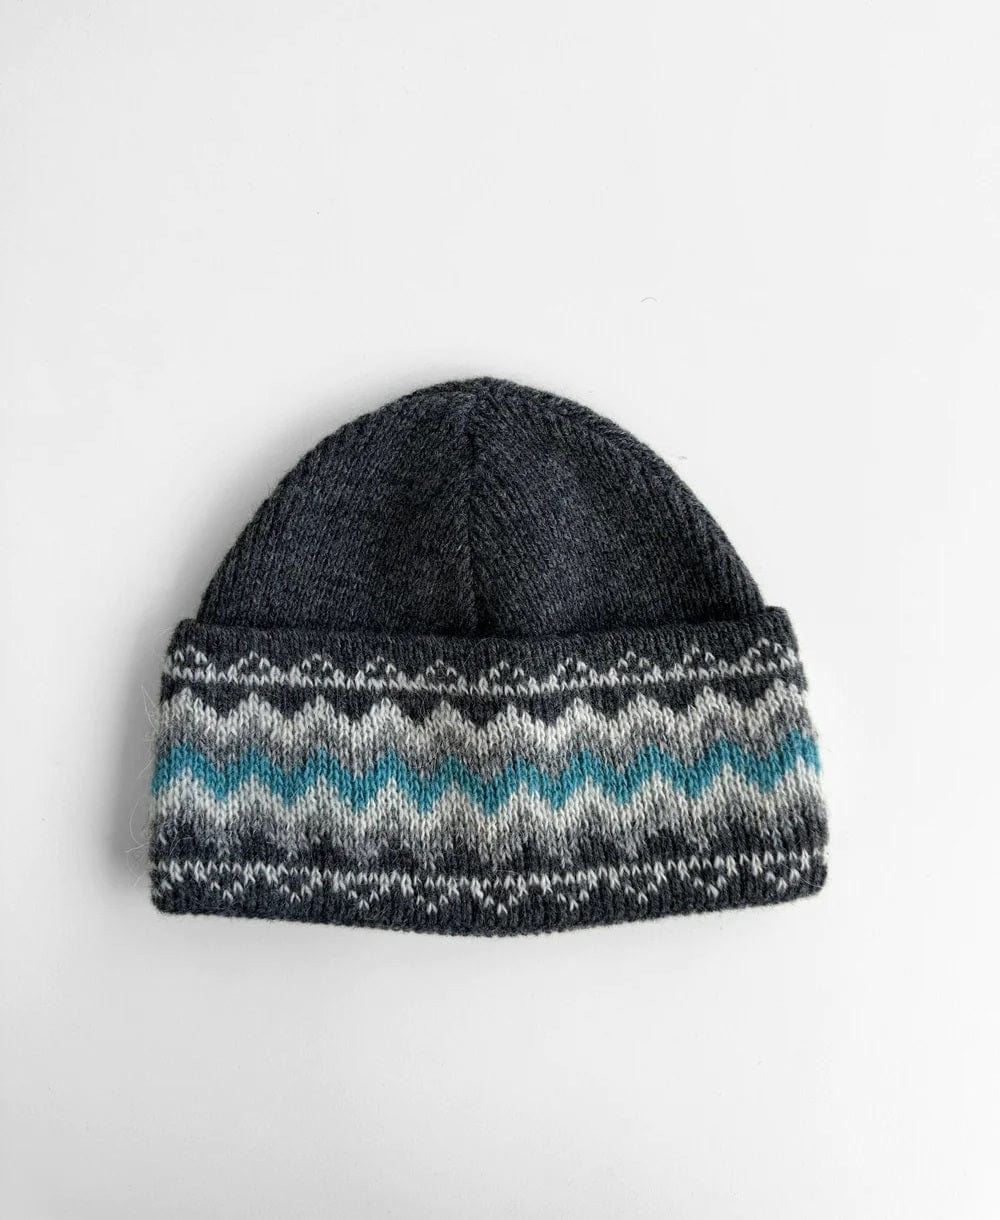 Wool Hat - Grey / Blue - Fanney - The Icelandic Store